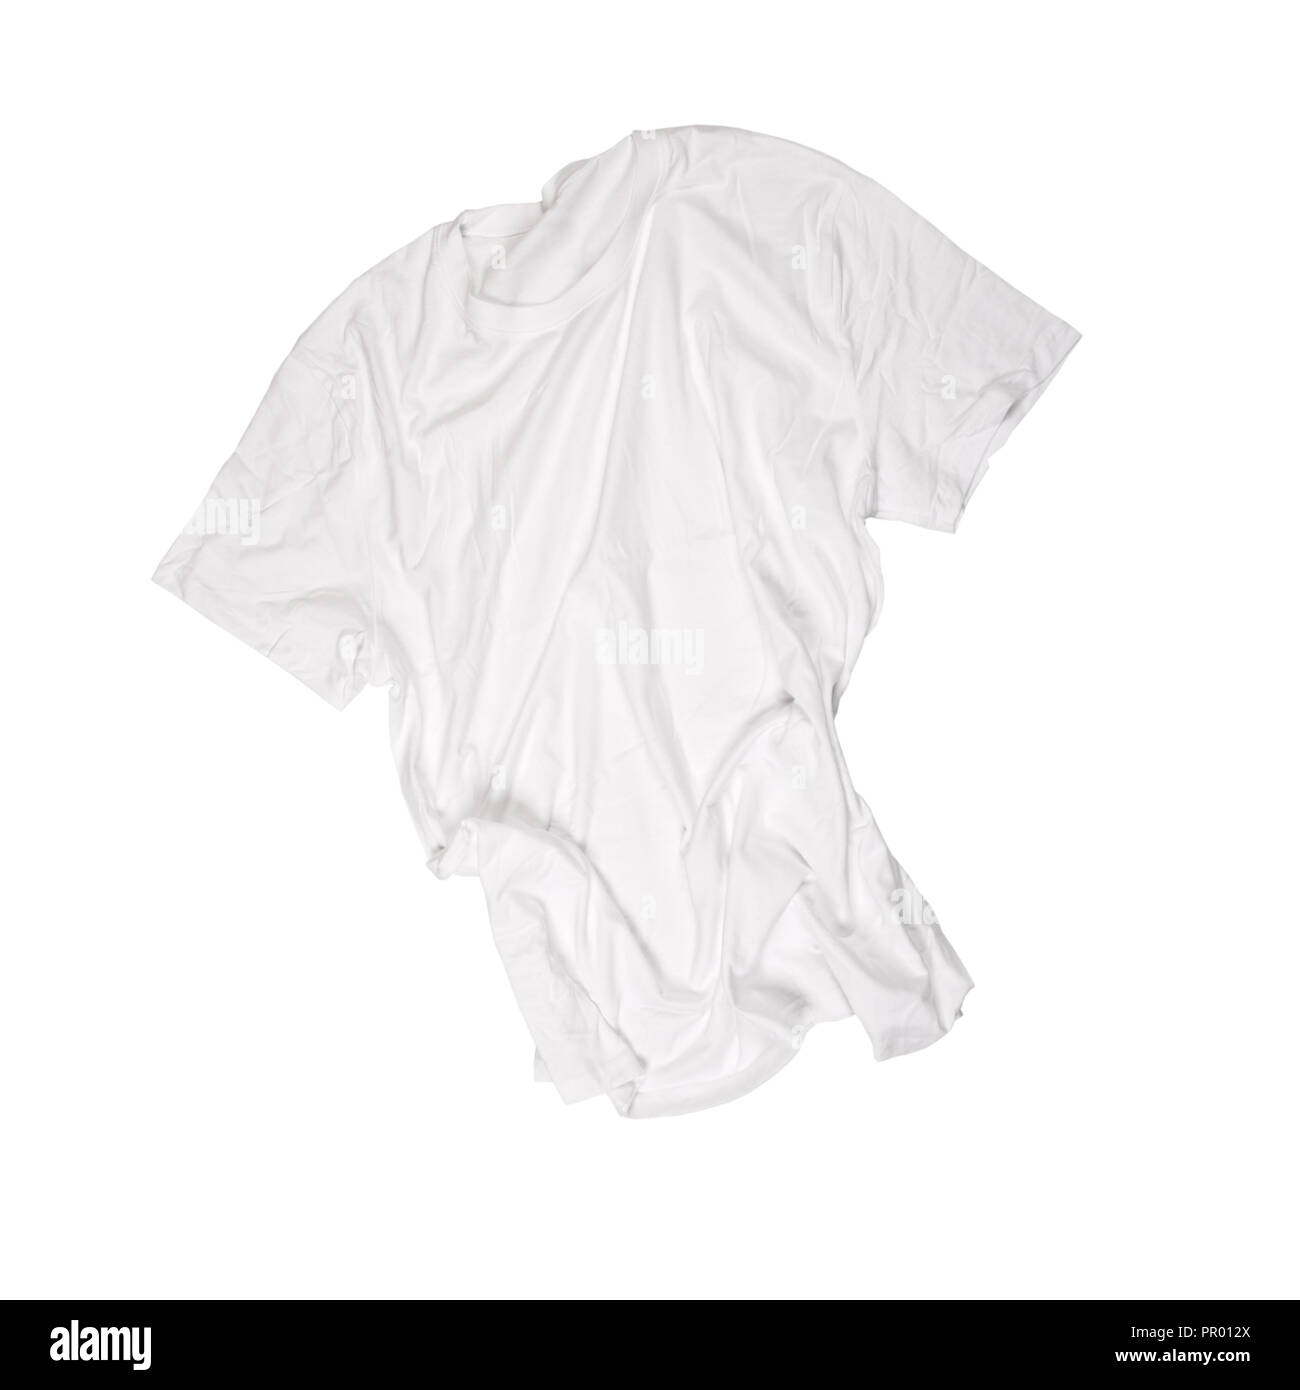 t-shirt isolated on white background Stock Photo